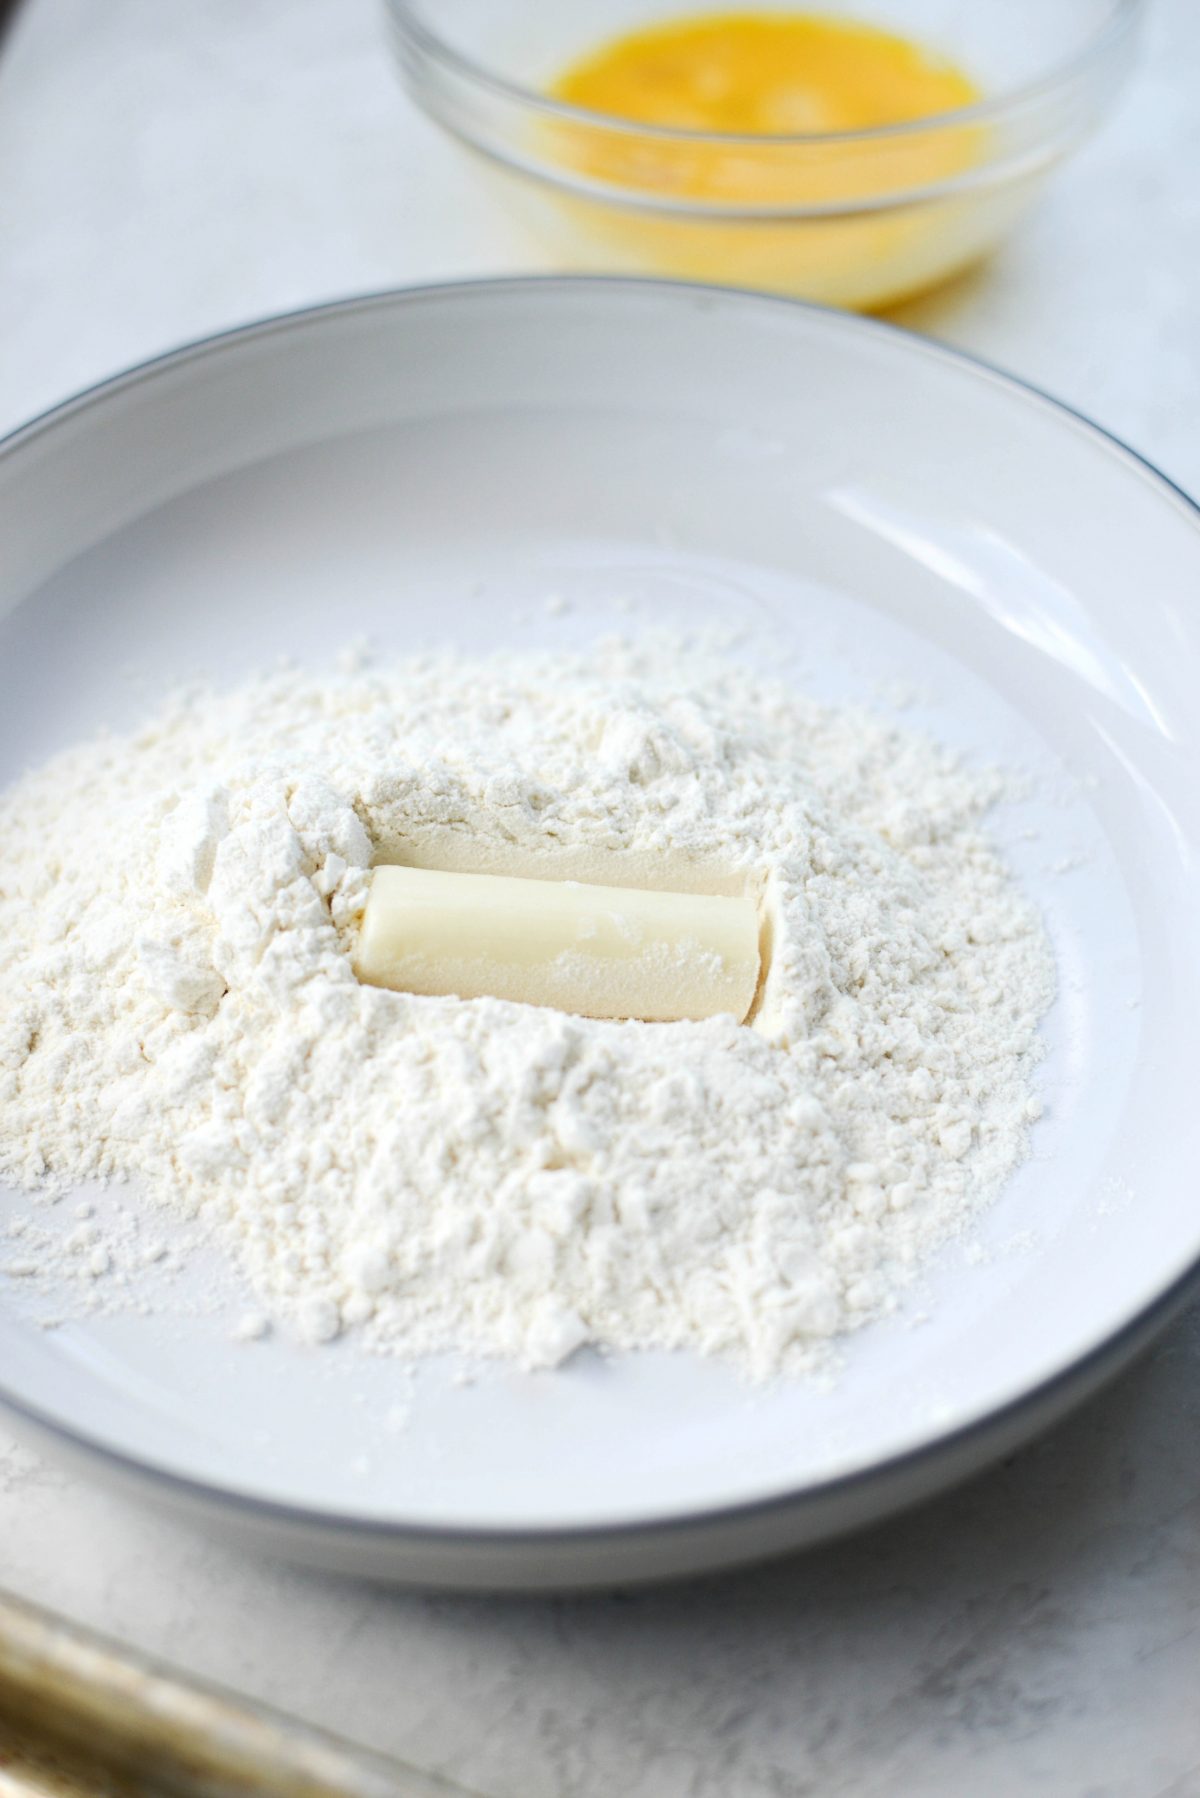 roll mozzarella stick in flour